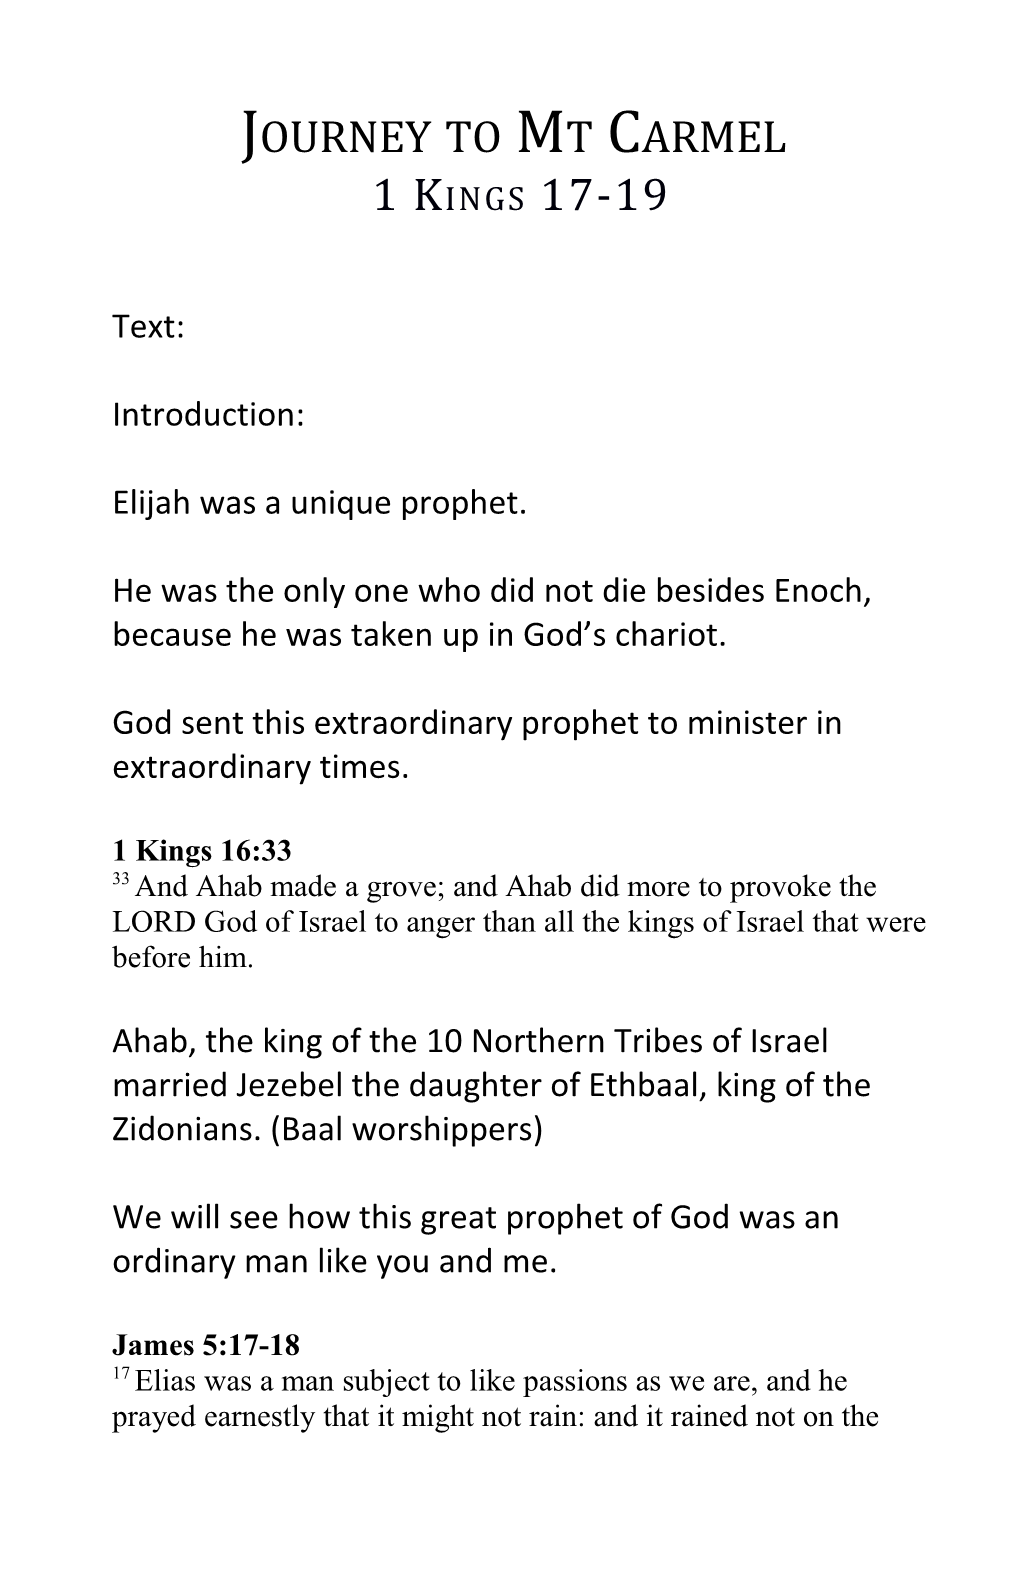 Elijah Was a Unique Prophet